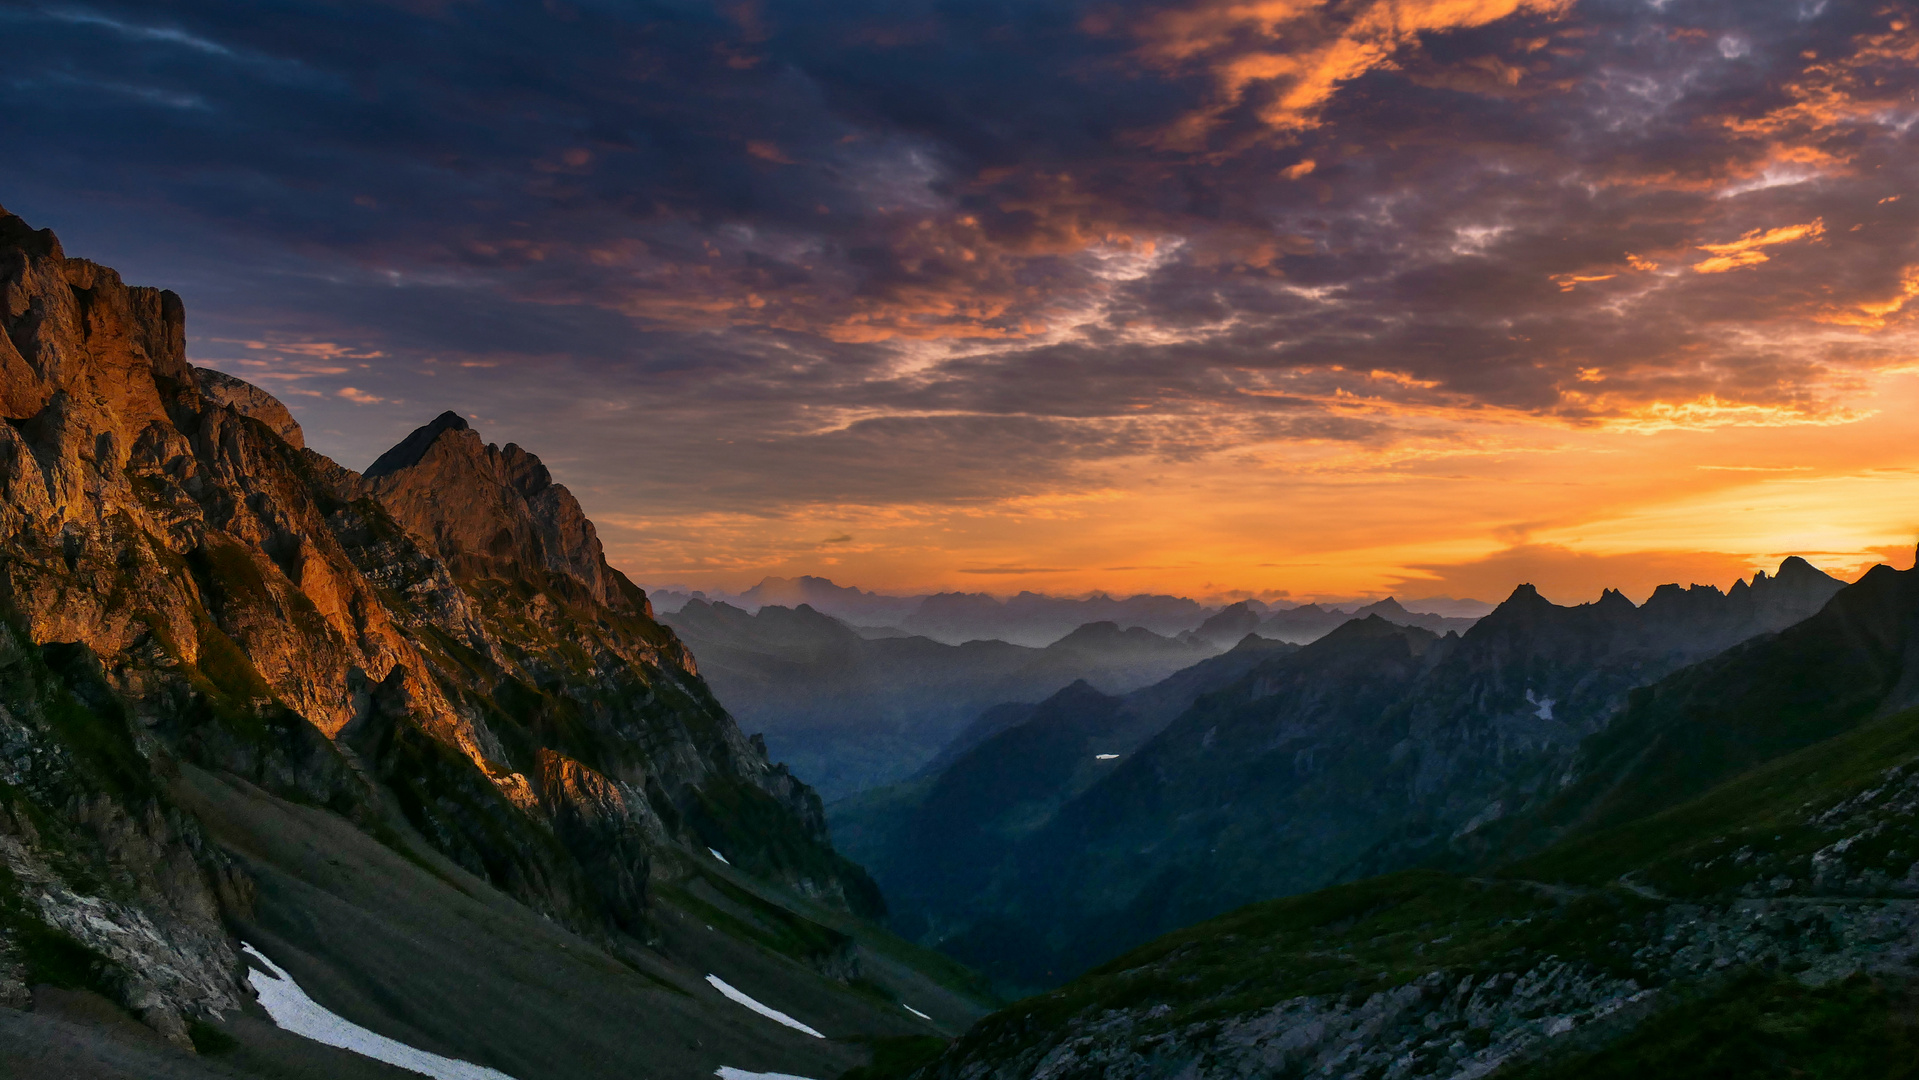 Gipfelgrate vom Rotsteinpass bei Sonnenuntergang im Appenzeller Land